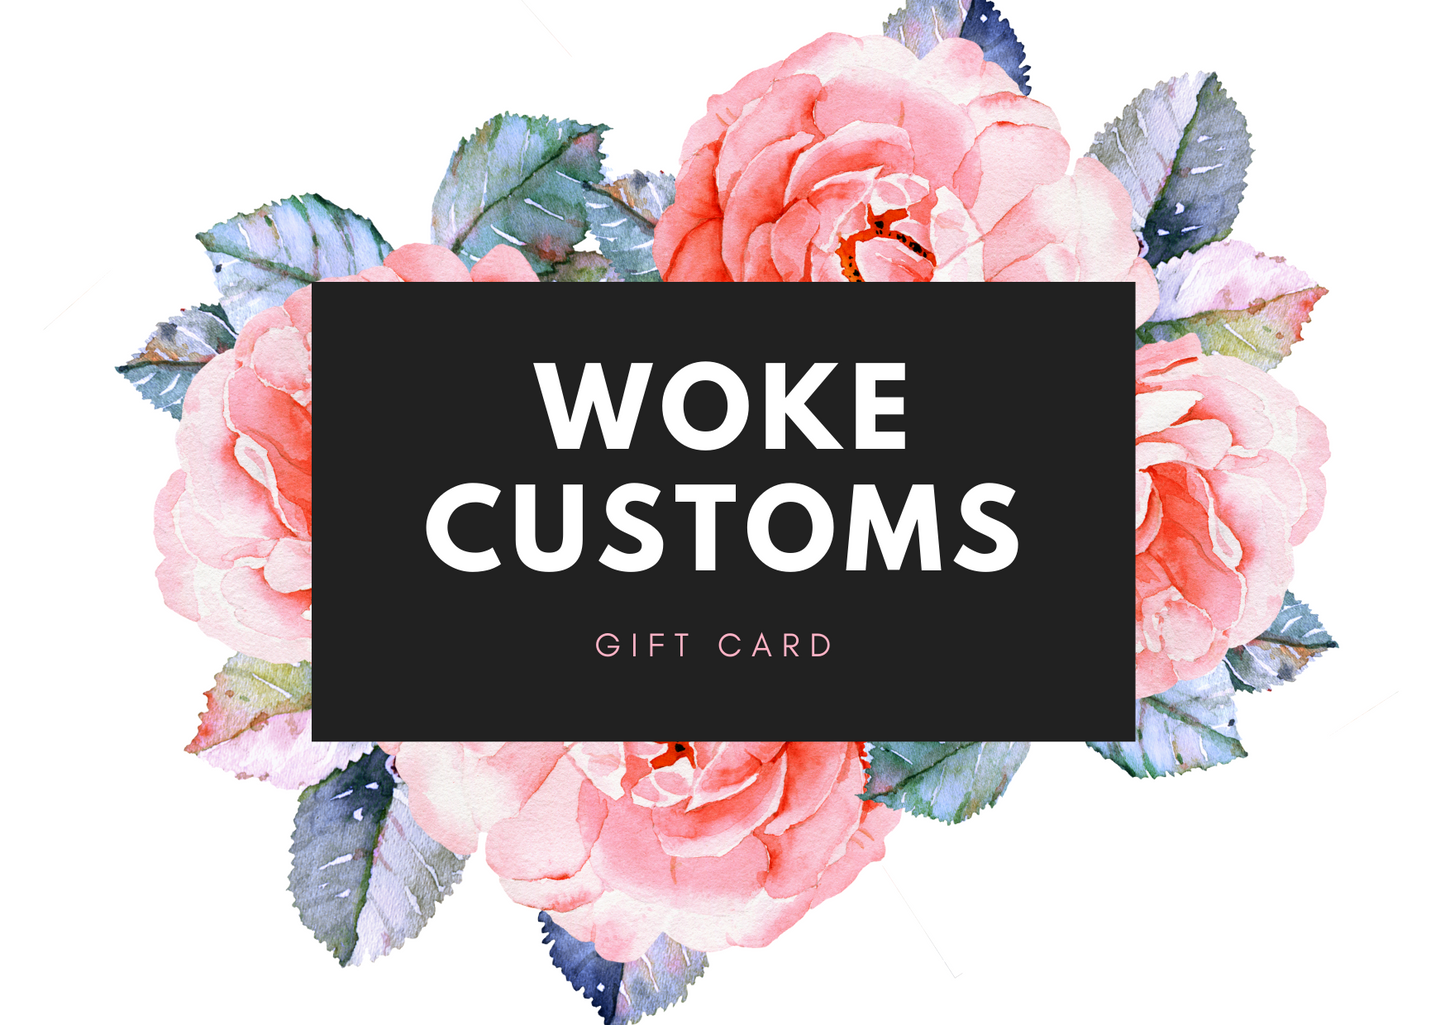 Wokecustoms giftcard